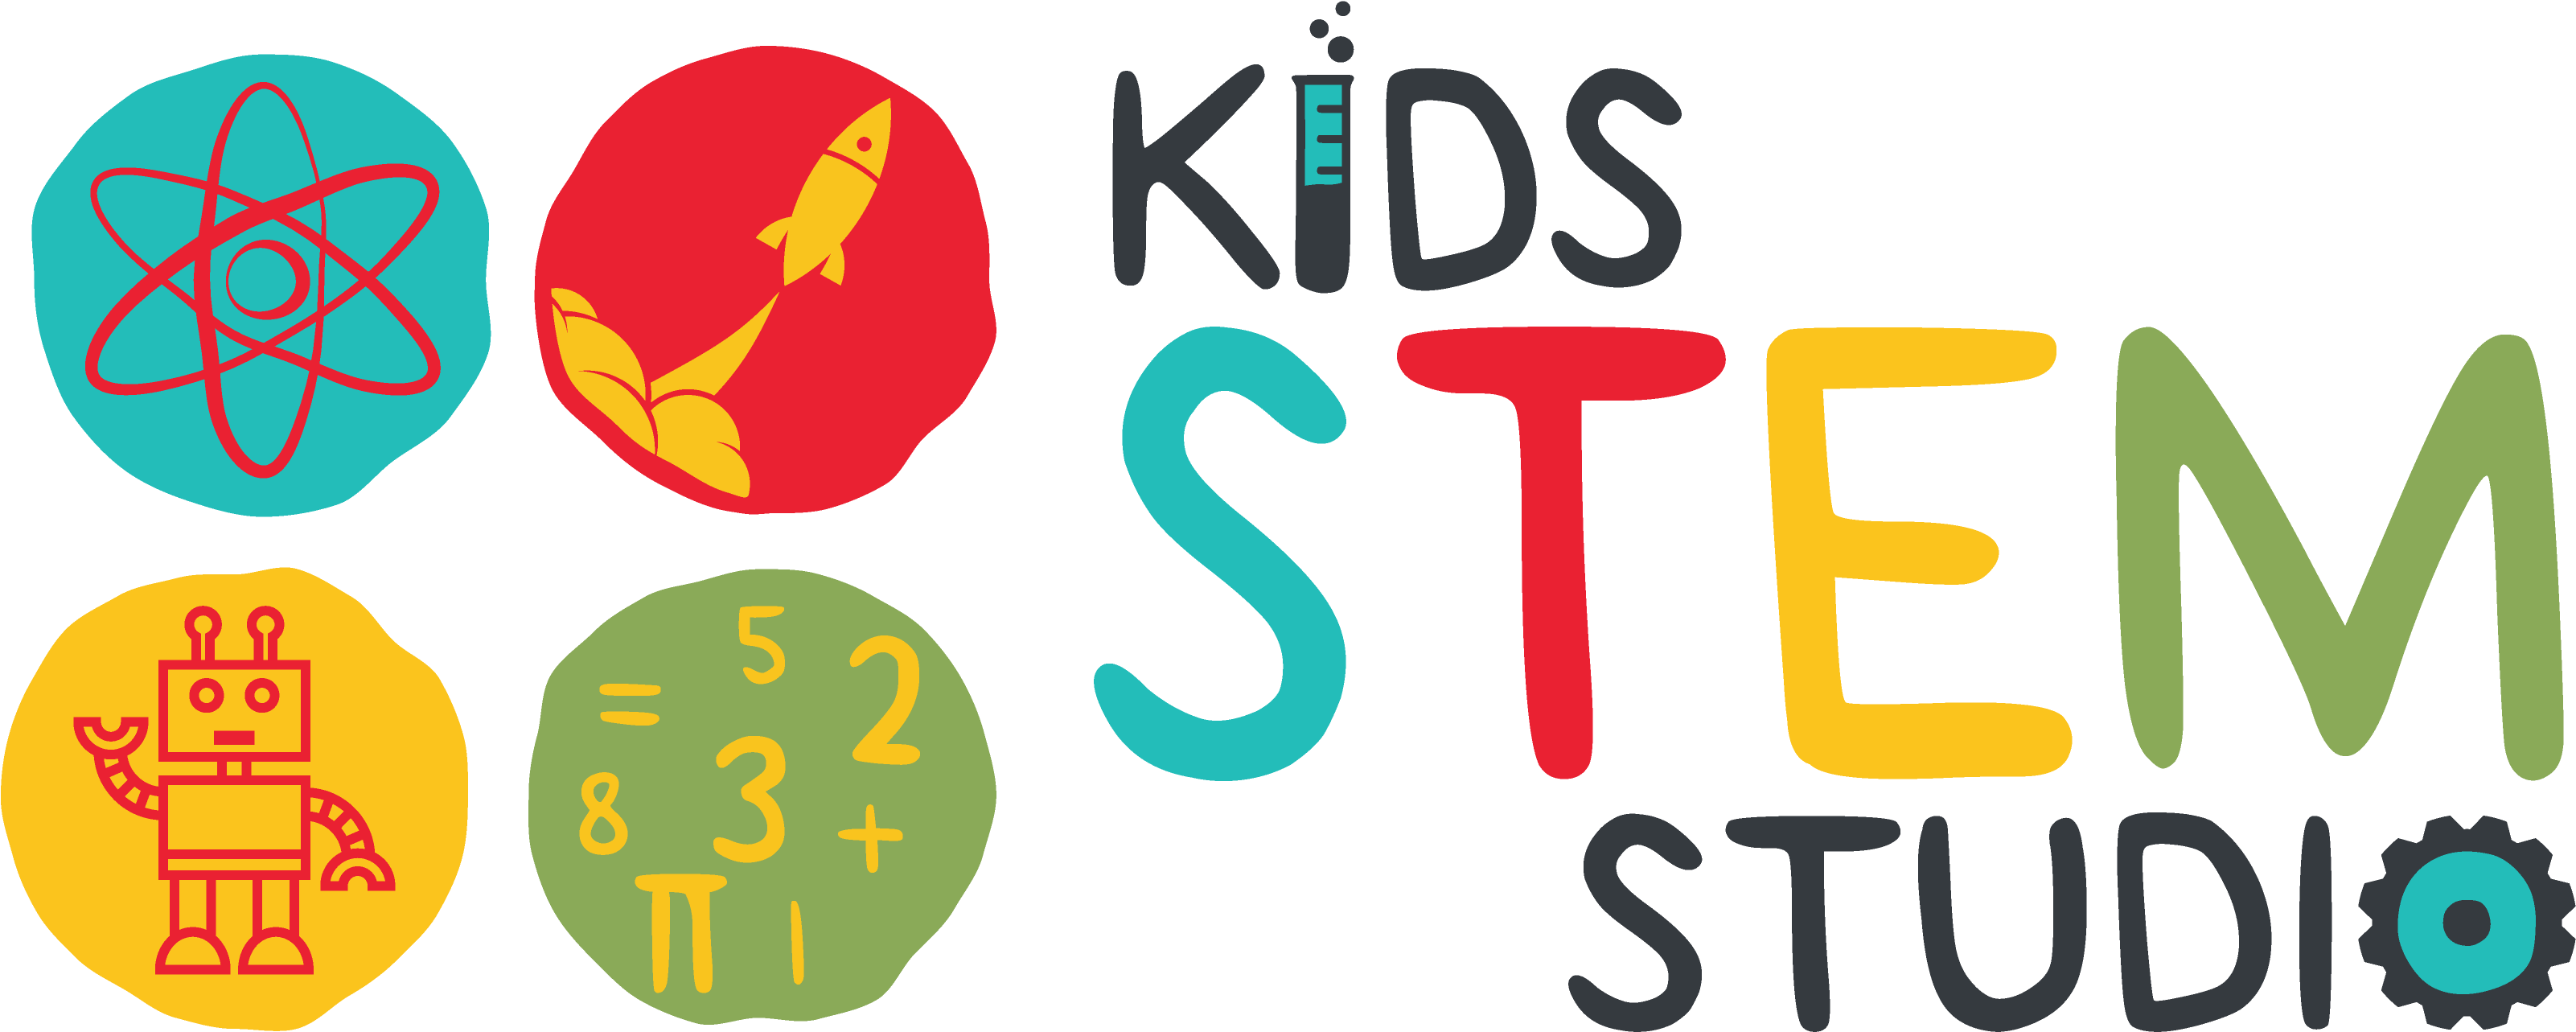 Kids Stem Studio - Kids Stem Studio (3333x1458)